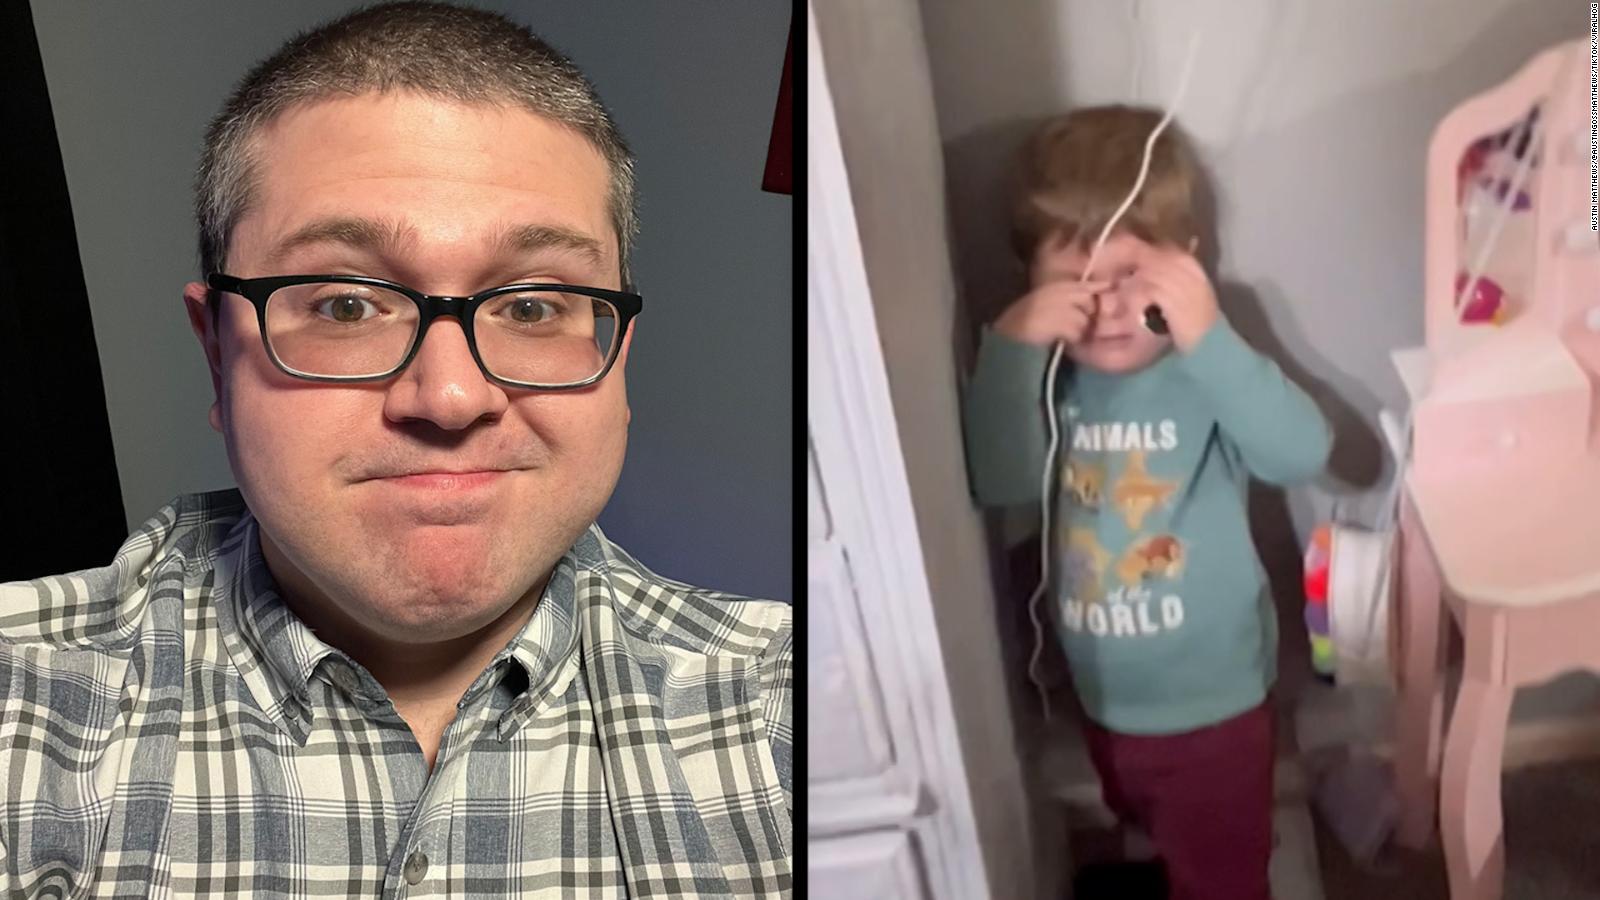 La cara recién afeitada de un padre hace que los niños se vuelvan
locos en un vídeo viral